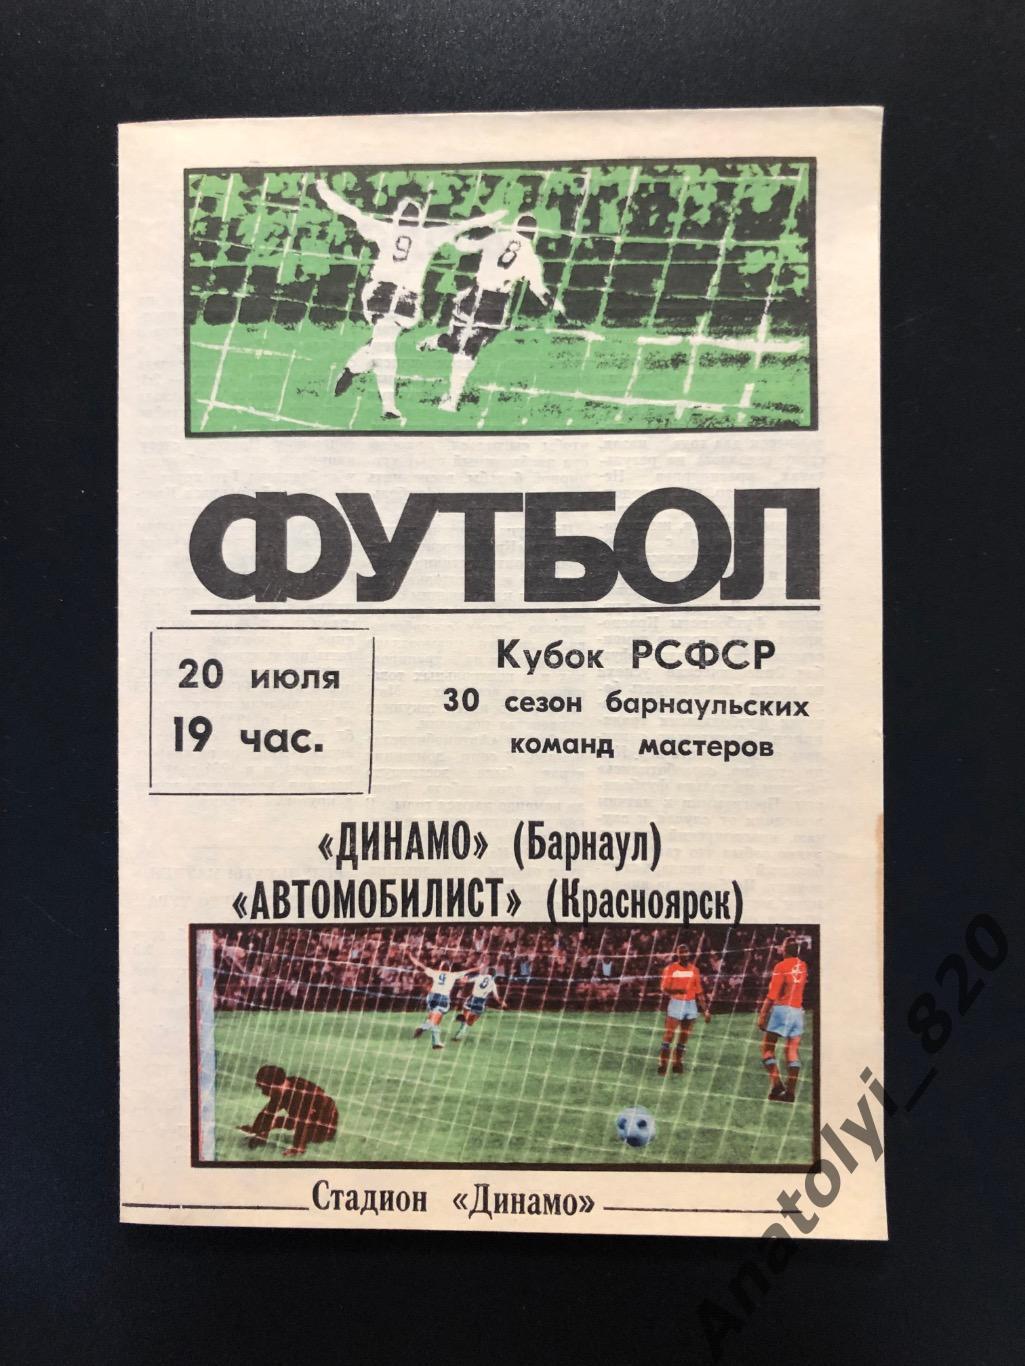 Динамо Барнаул - Автомобилист Красноярск, кубок 1986 год